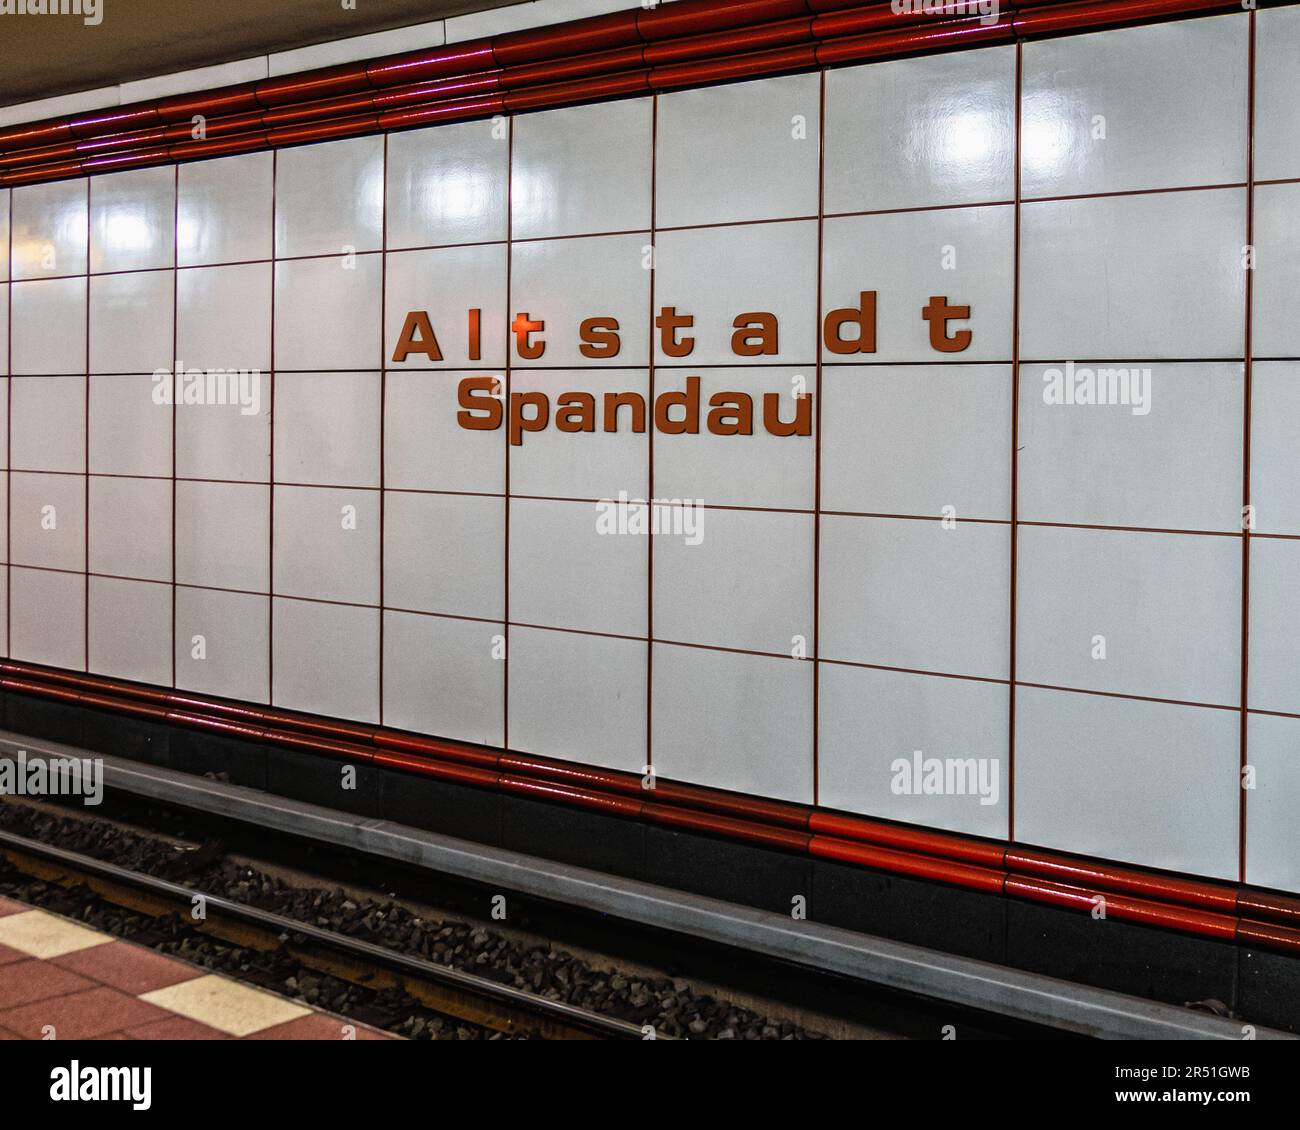 U Altstadt Spandau la station de métro U-Bahn dessert la ligne U7 à Alt-Spandau, Berlin, Allemagne. Station décorative Banque D'Images